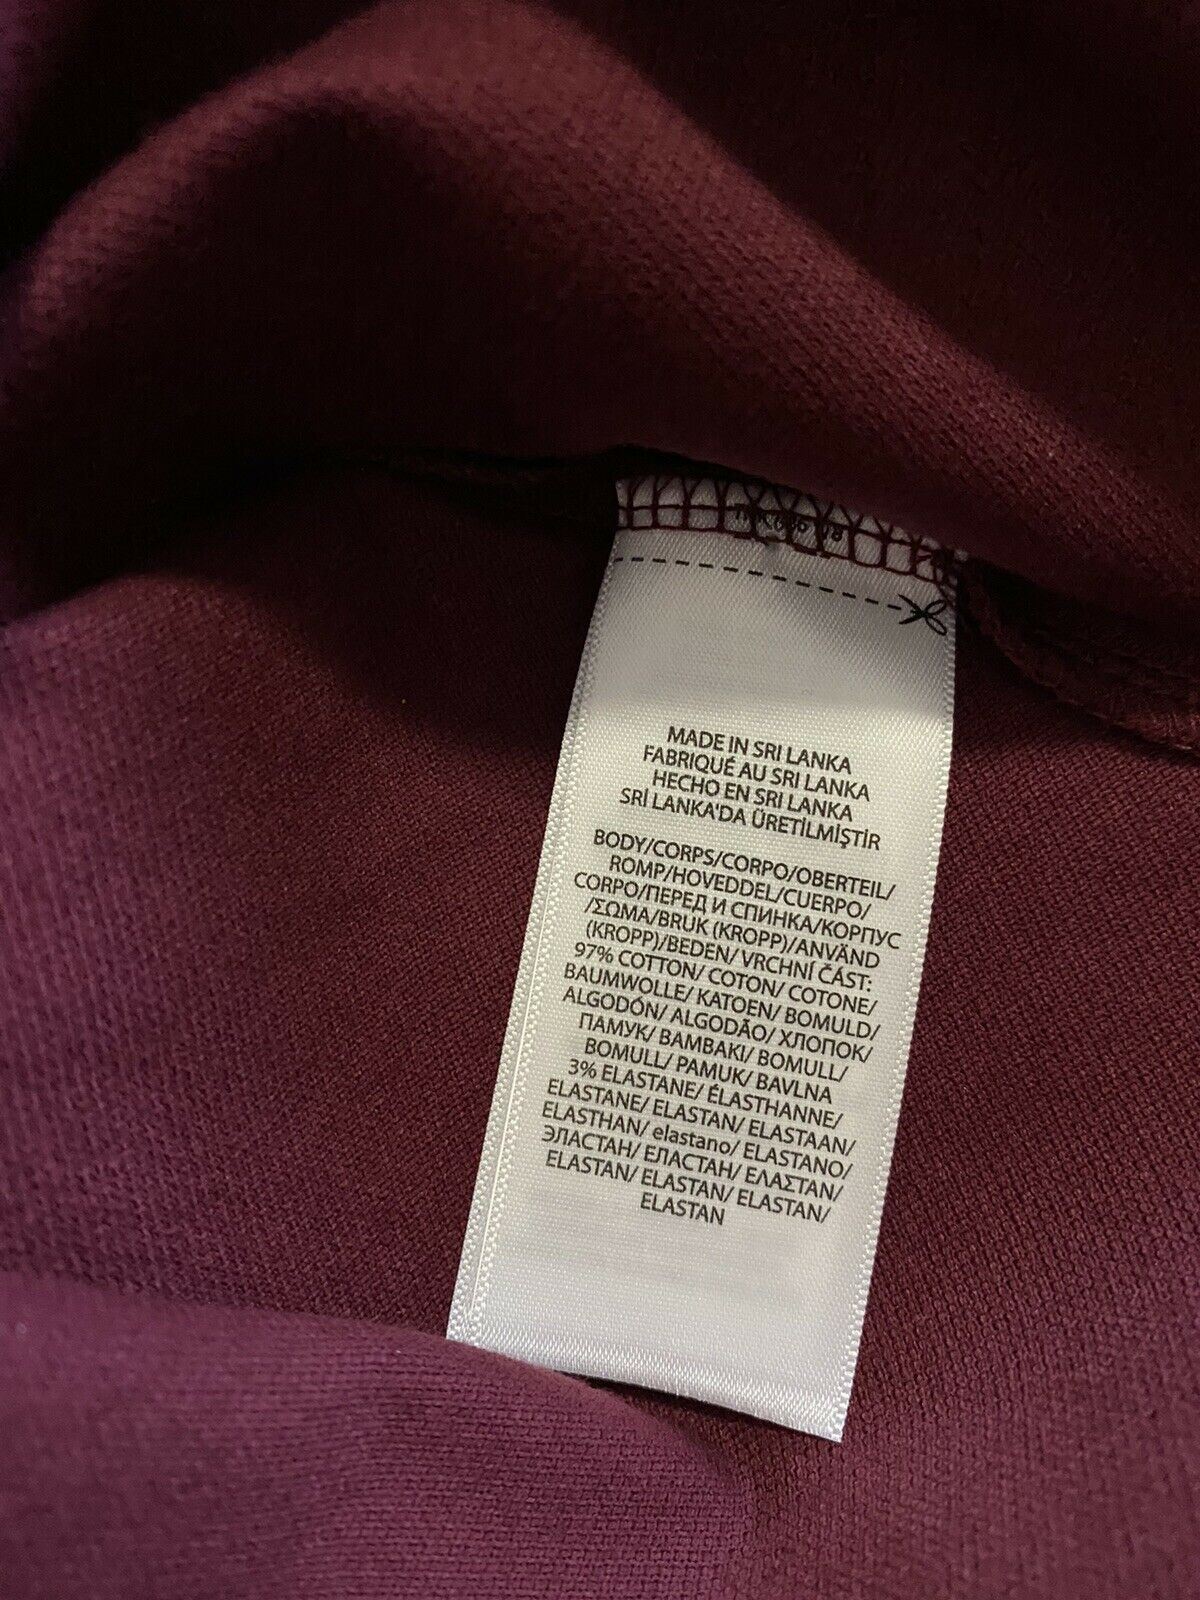 Neu mit Etikett: Polo Ralph Lauren Herren-Langarm-Poloshirt, Burgunderrot, Größe XL